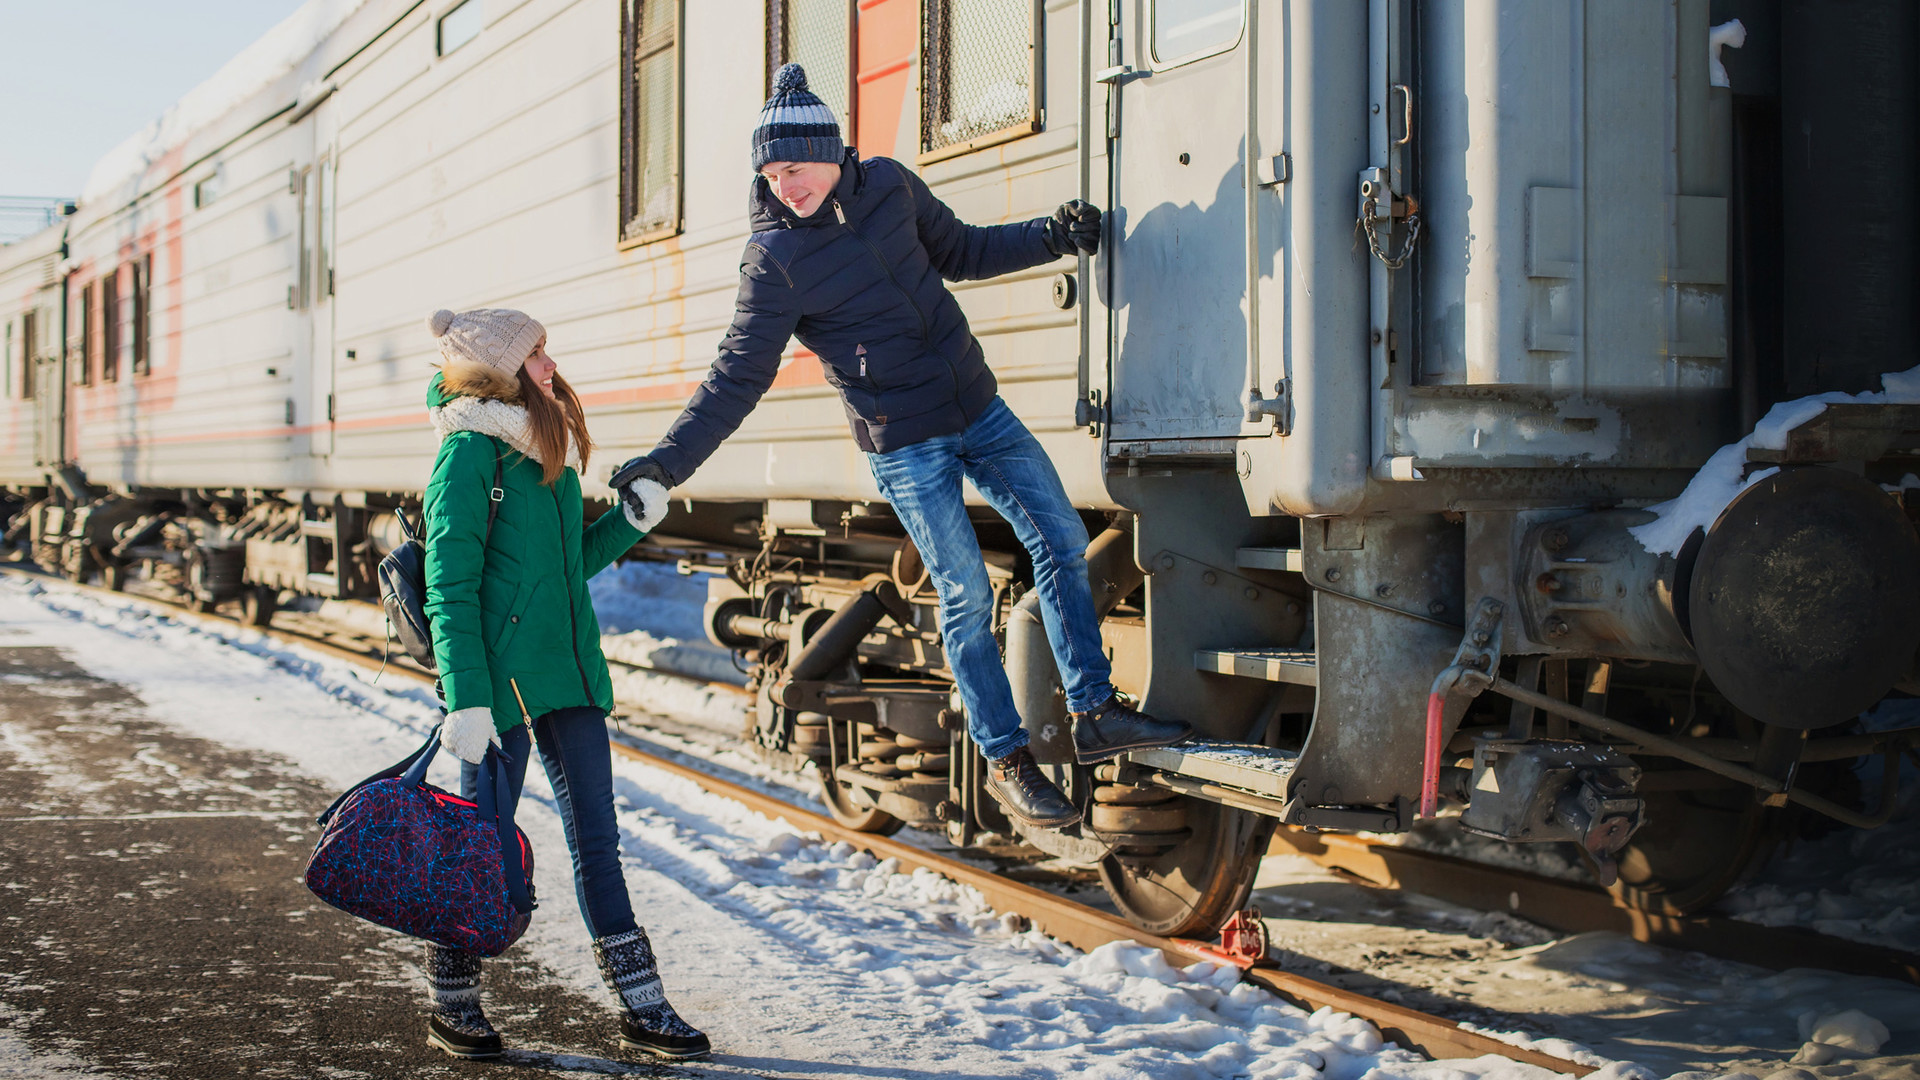 Можно ли приехать на поезде. Человек рядом с поездом. Фотосессия в электричке зимой. Люди в поезде. Зимняя фотосессия на железной дороге.